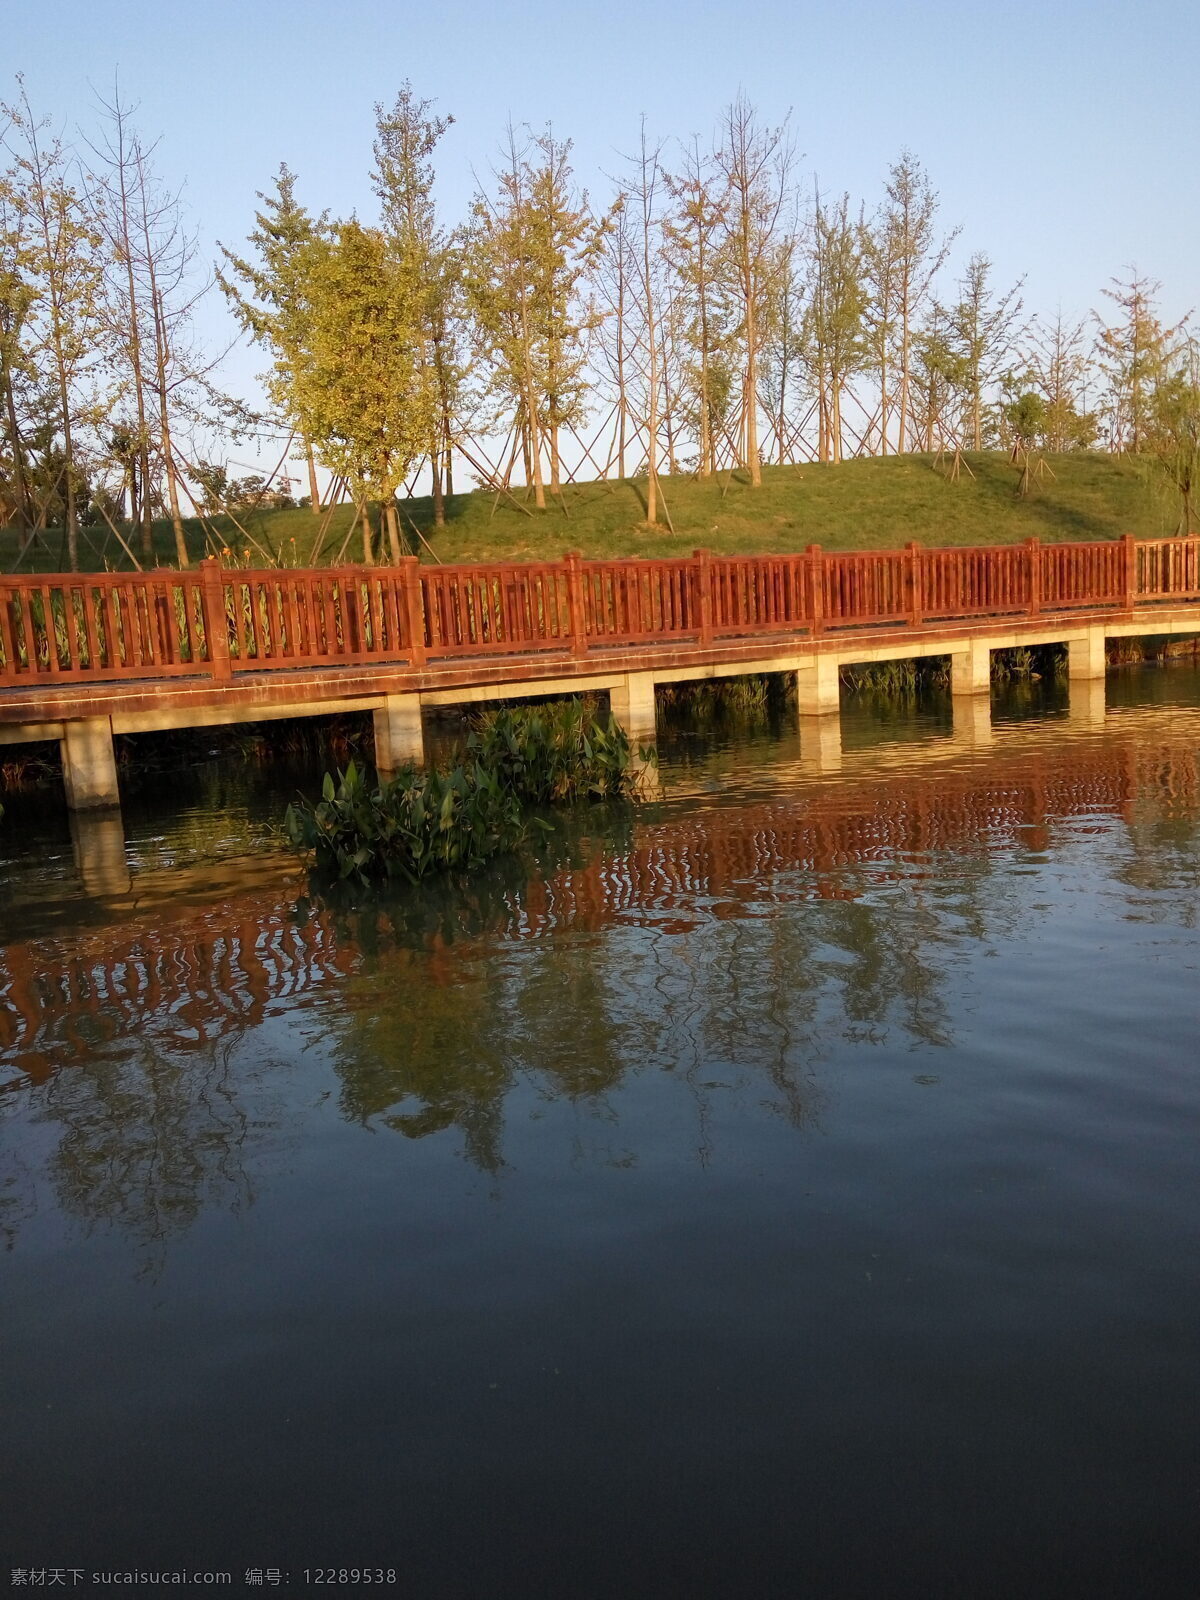 风景 湿地公园 长桥 生活 树木 水波 倒影